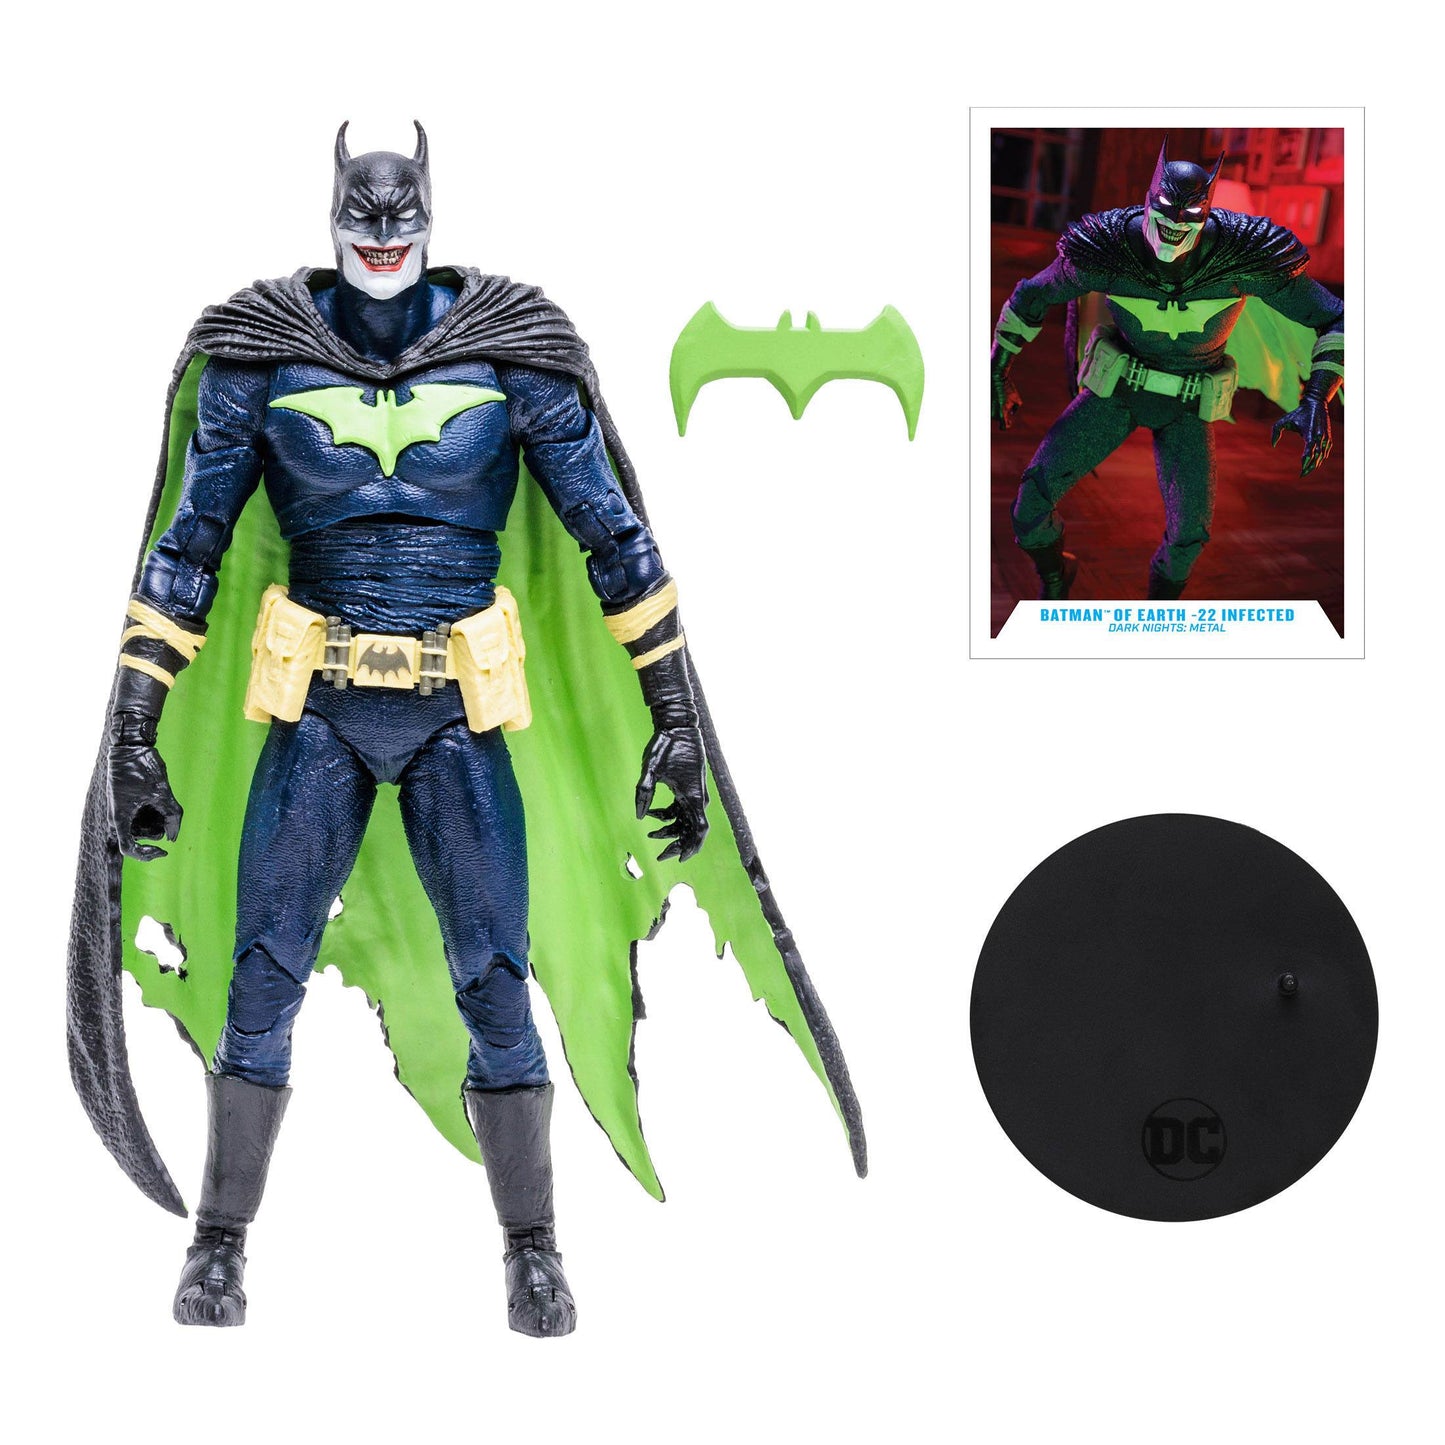 Batman von Earth -22 infiziert - artikulierte Figur